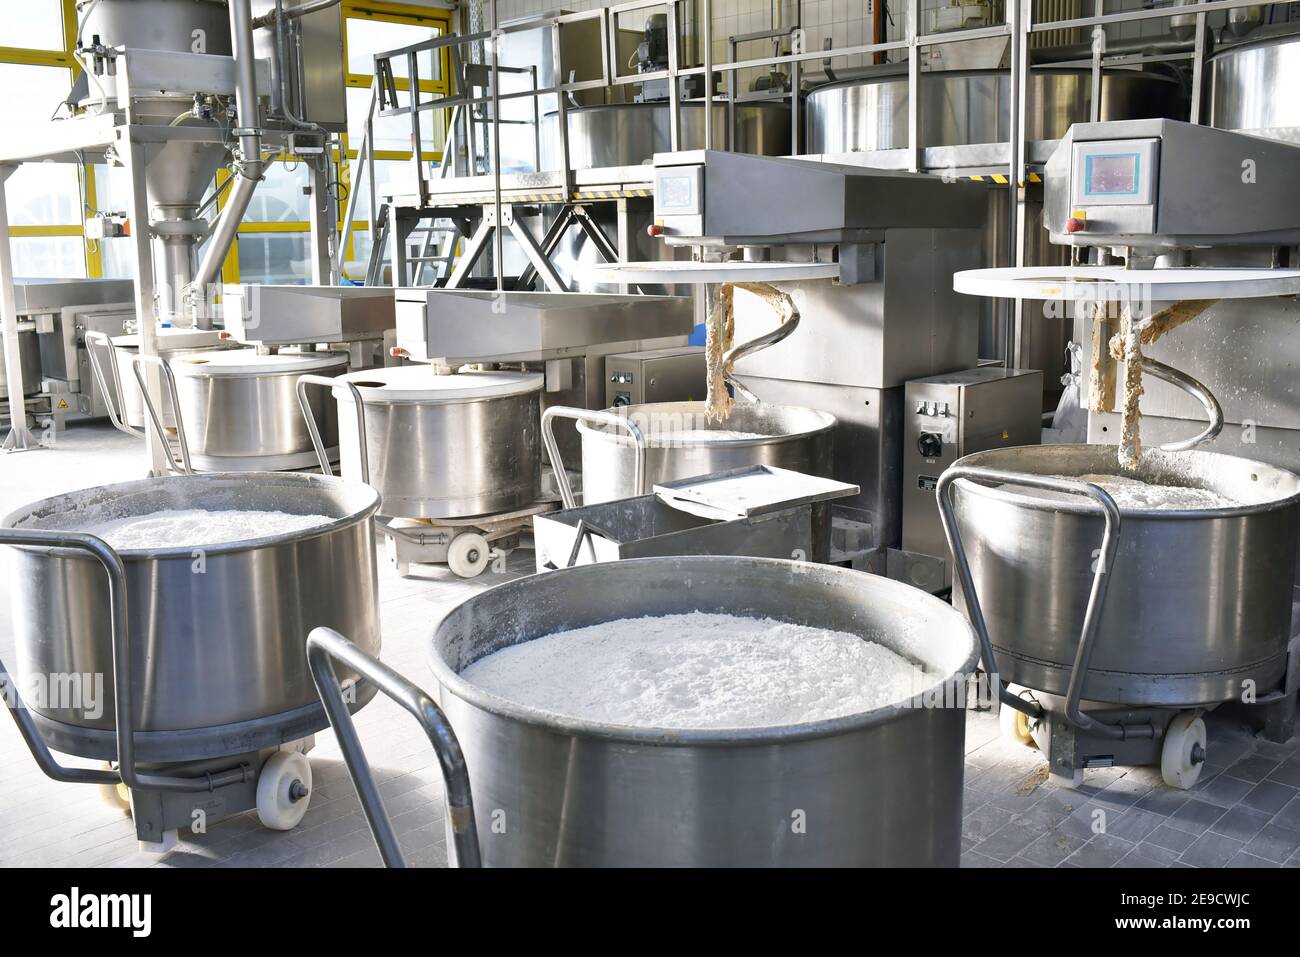 produzione industriale di prodotti da forno su una linea di assemblaggio - tecnologia e macchinari nella fabbrica alimentare Foto Stock